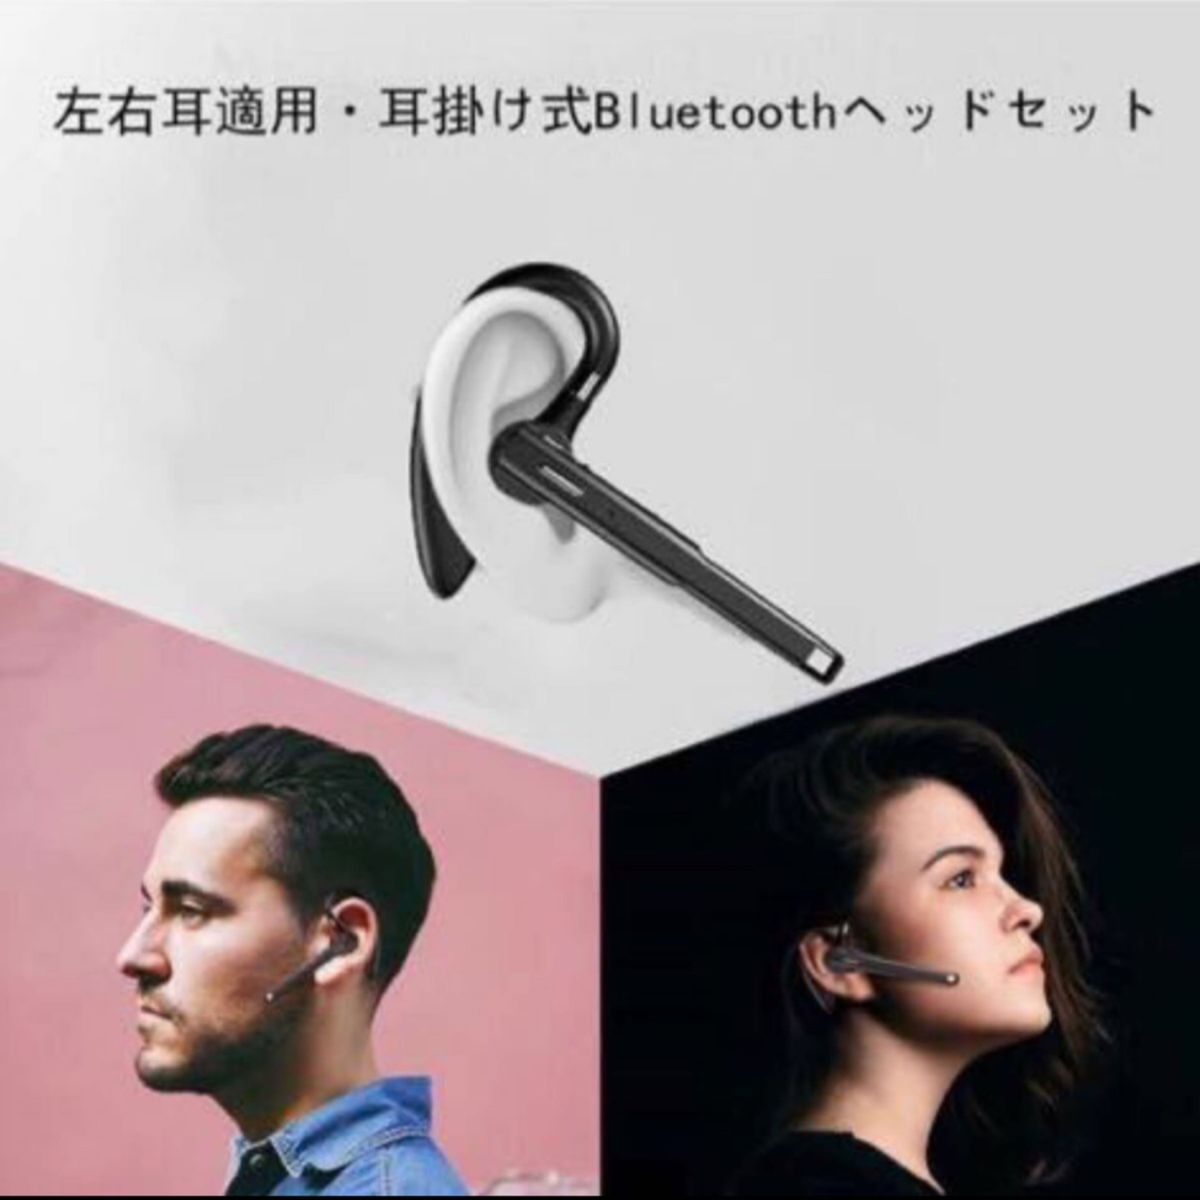 Bluetooth5.1ヘッドセット Bluetoothイヤホン ワイヤレスヘッドセット イヤホン 片耳 耳掛け式 